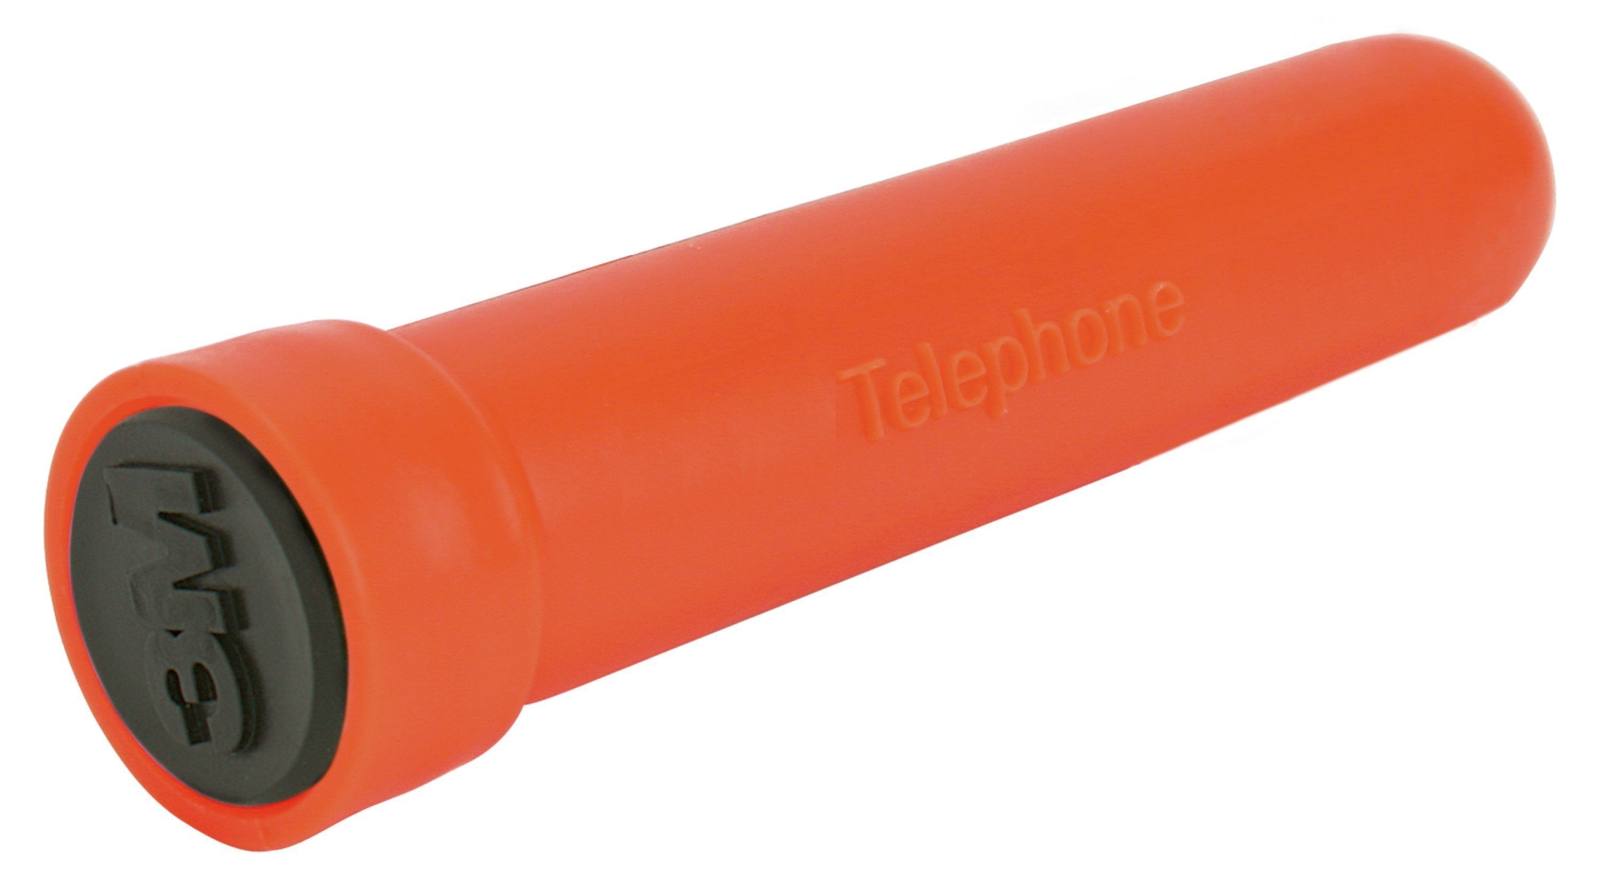  3M 1432 EMS-kynämerkintä - puhelin, oranssi